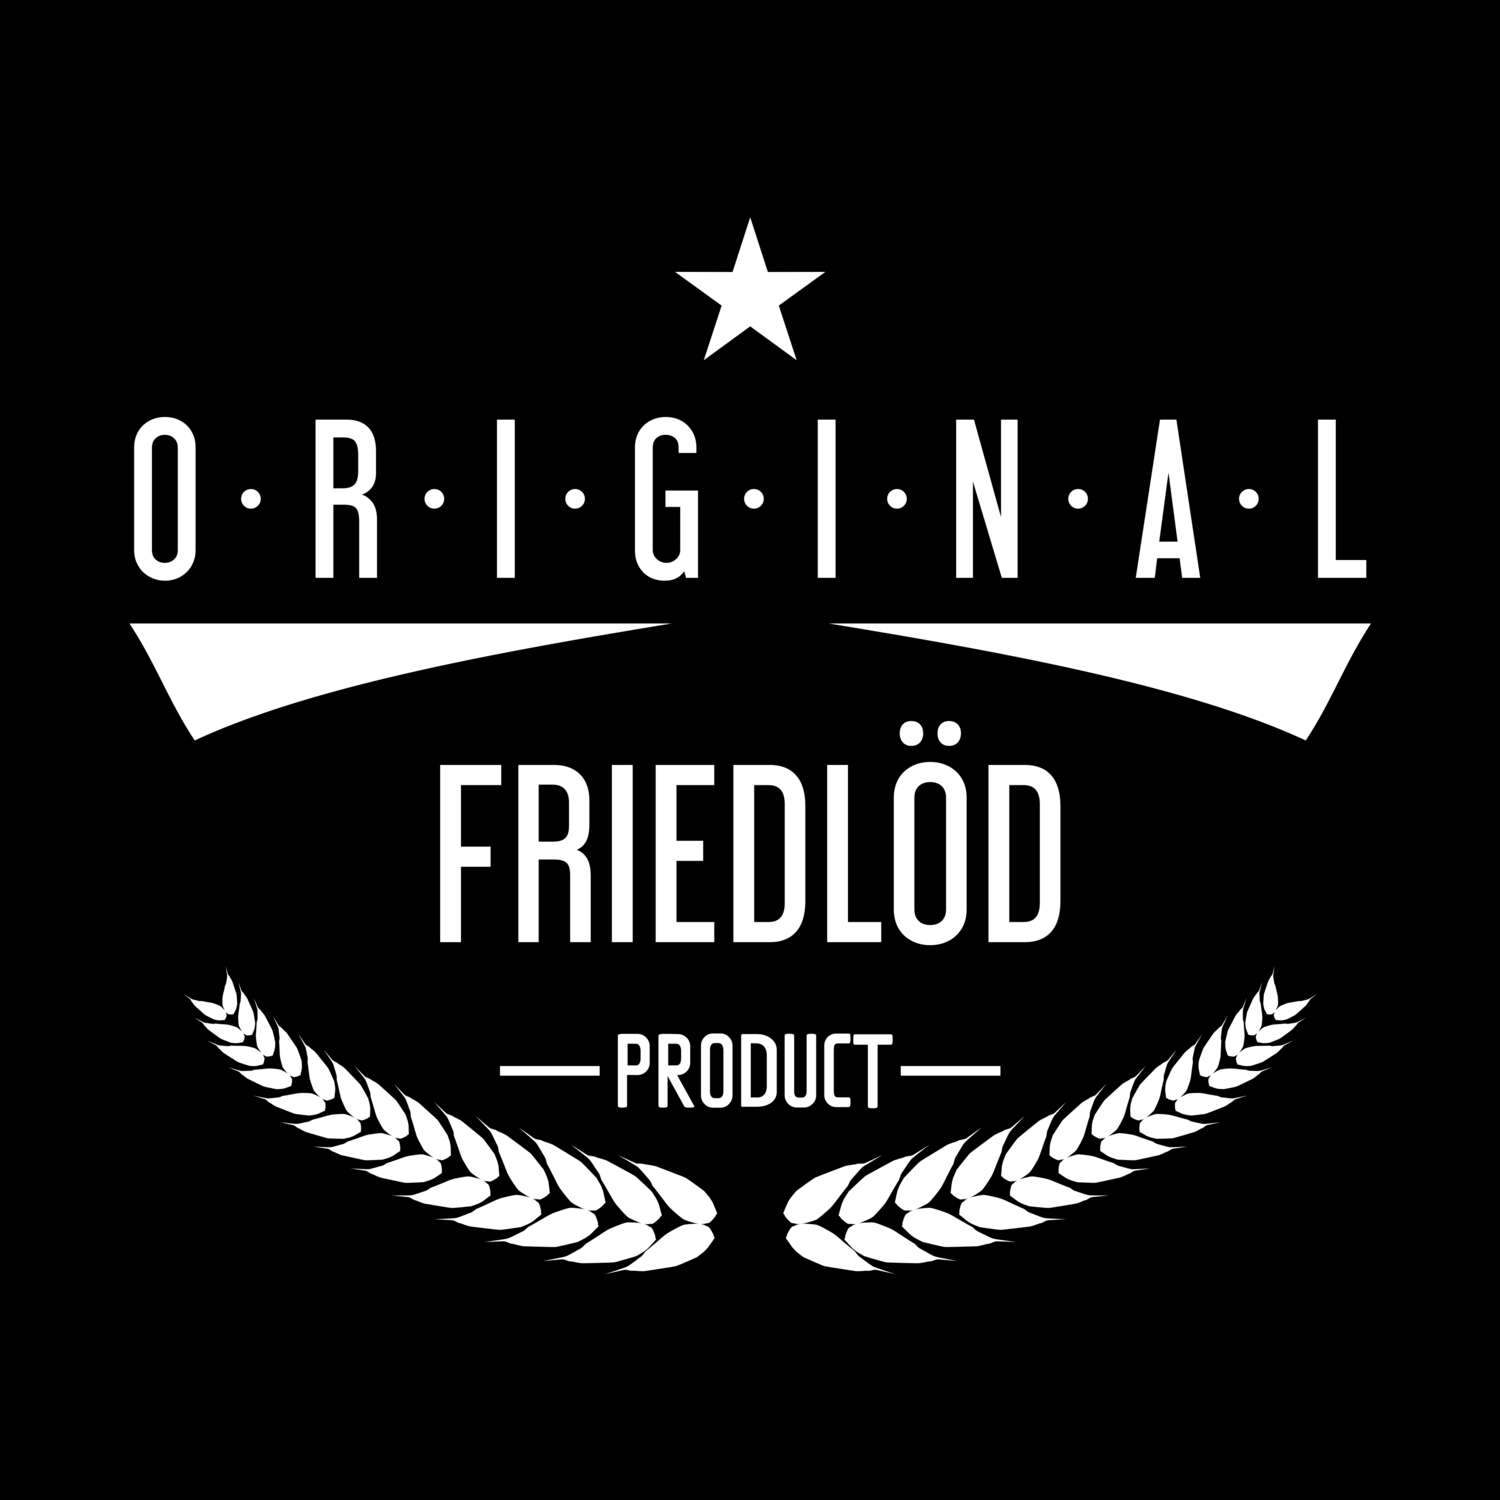 Friedlöd T-Shirt »Original Product«